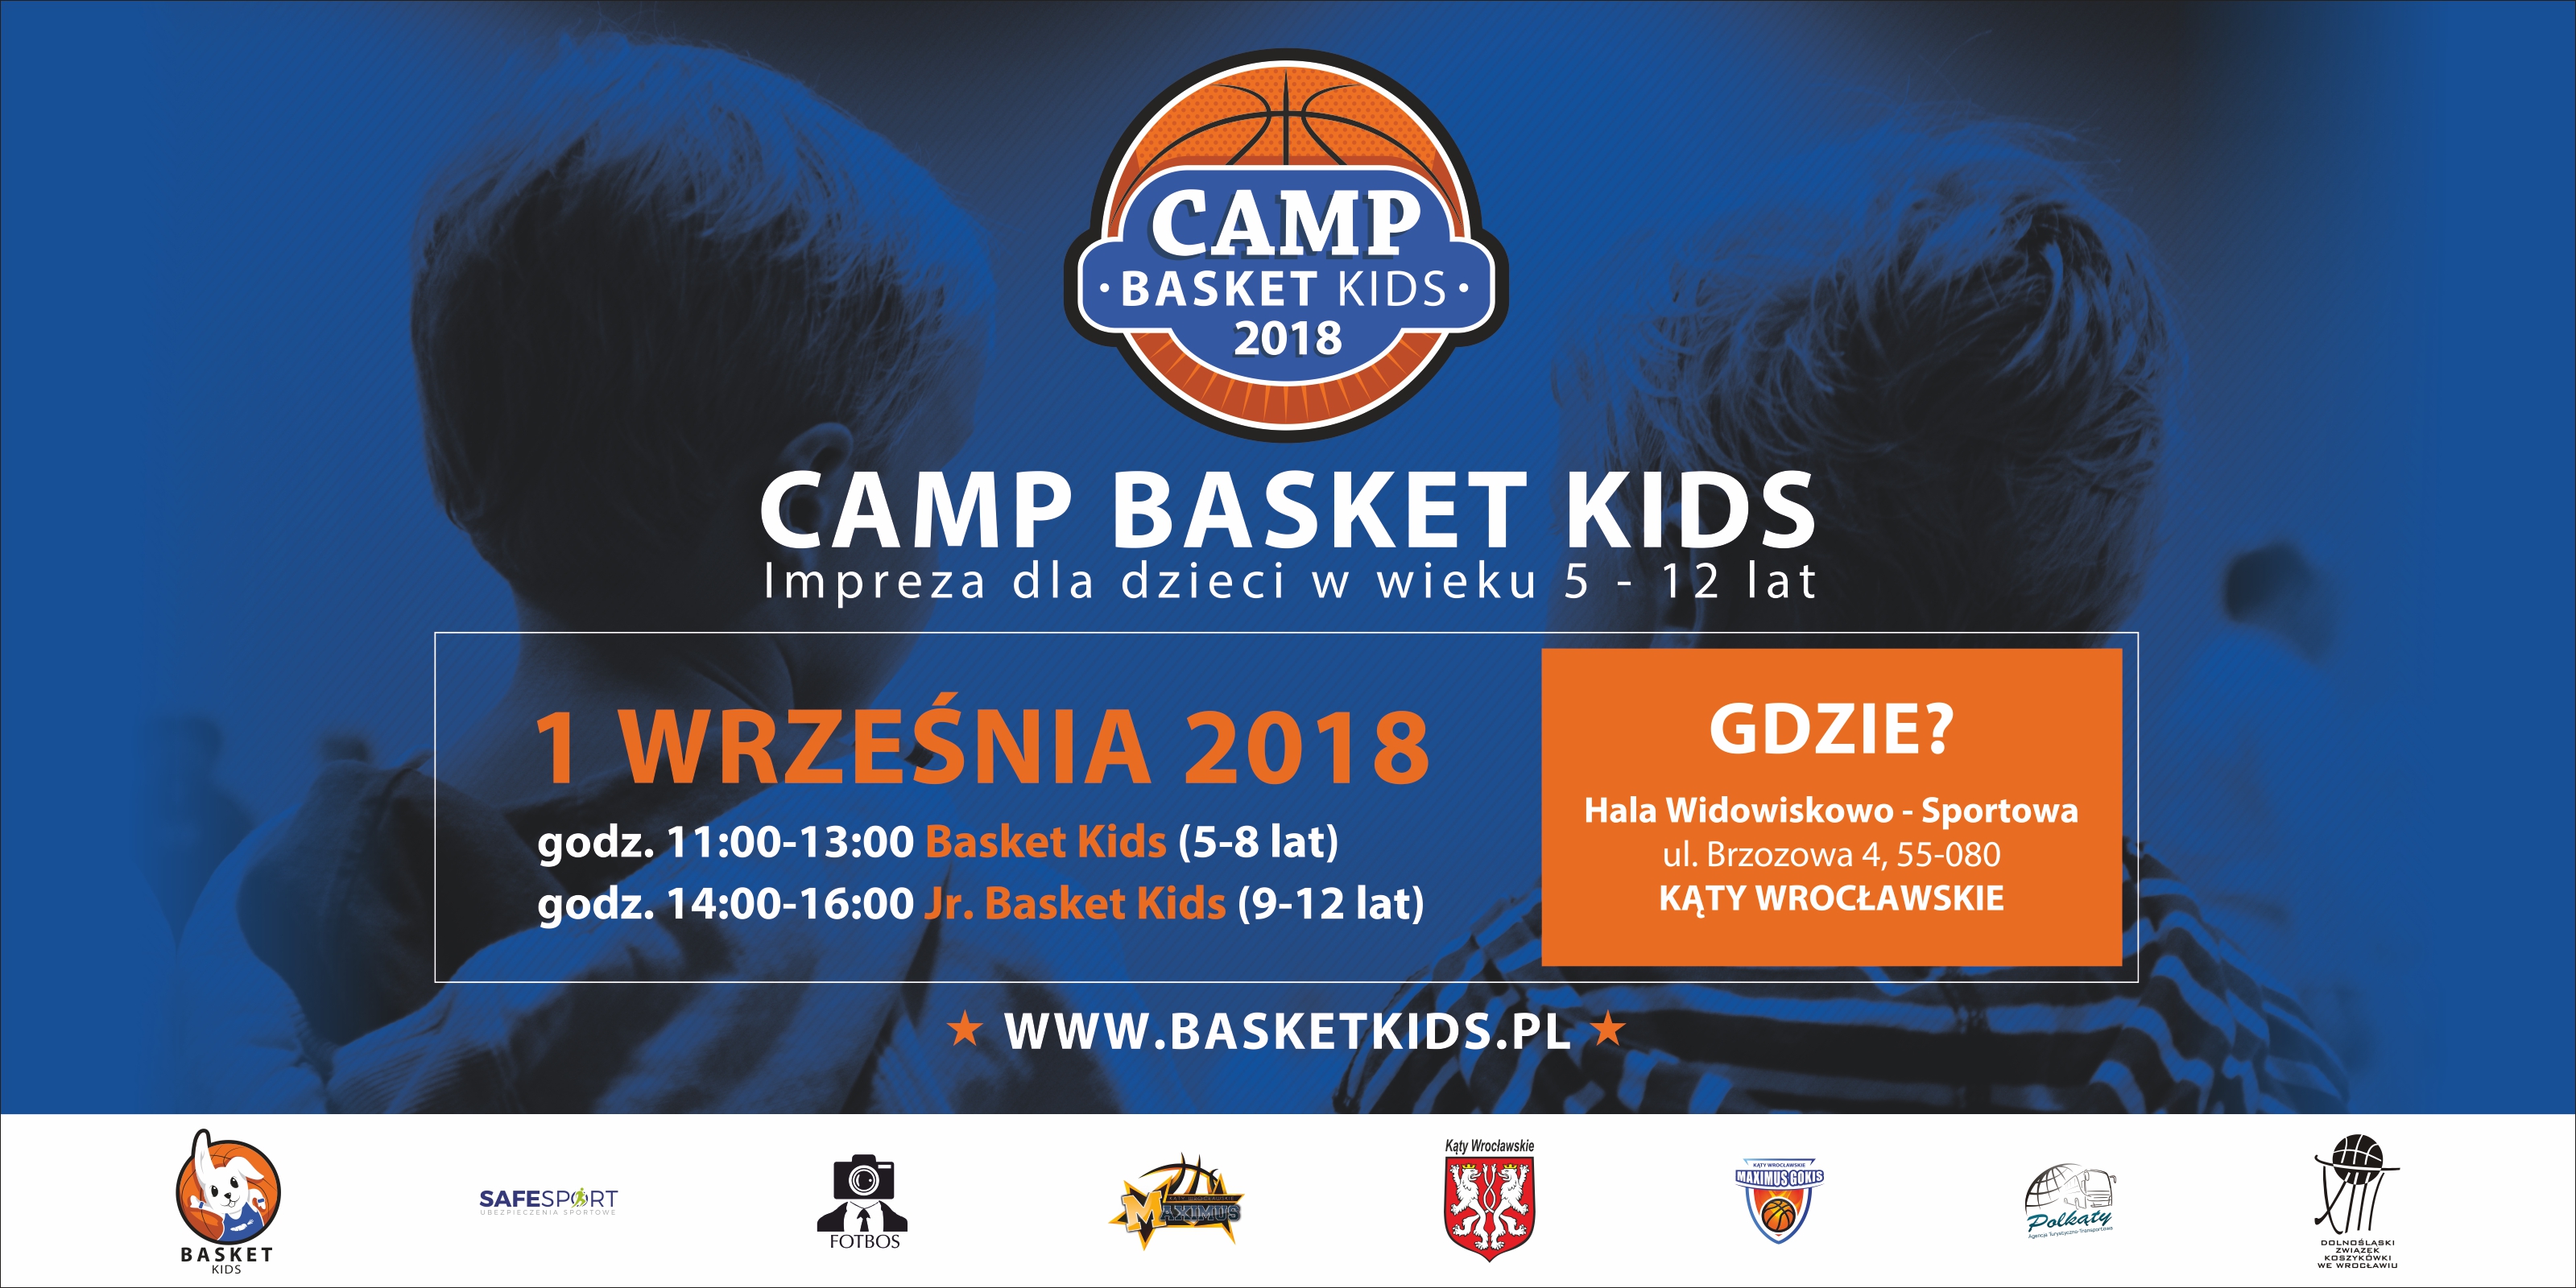 Camp Basket Kids - 1 września w Kątach Wrocławskich - trwają zapisy